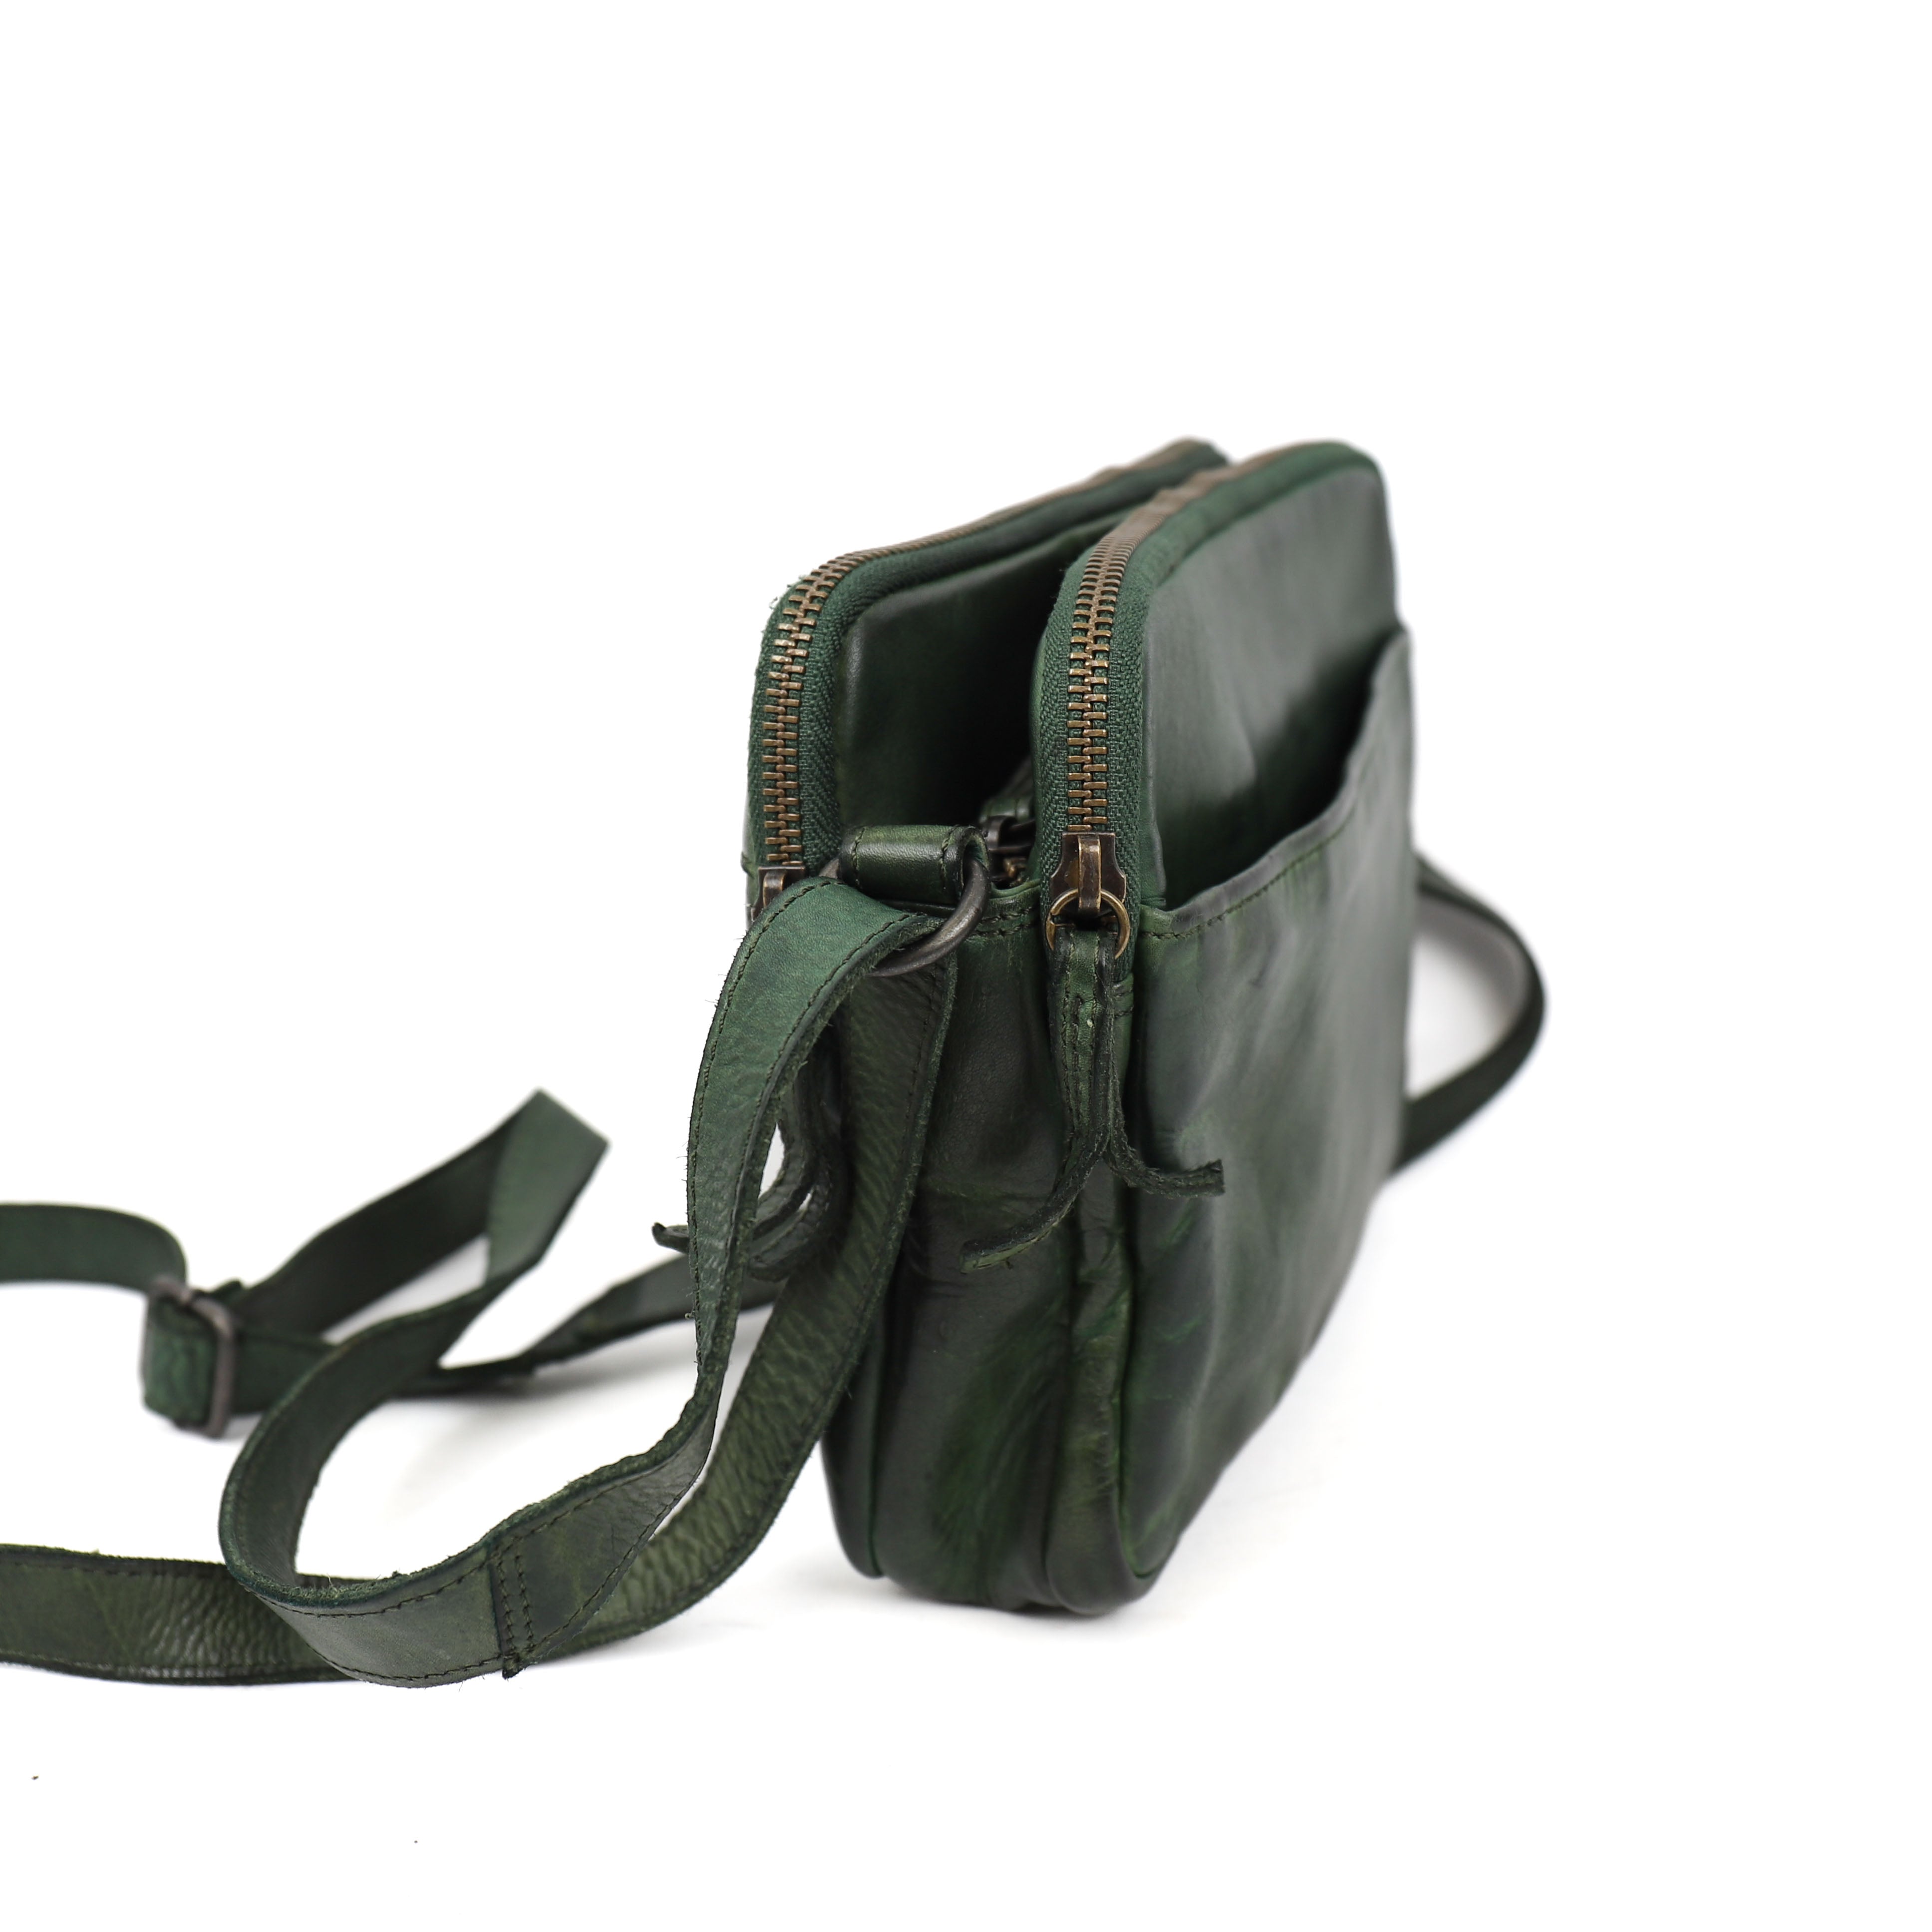 Shoulder bag 'Vieve' green